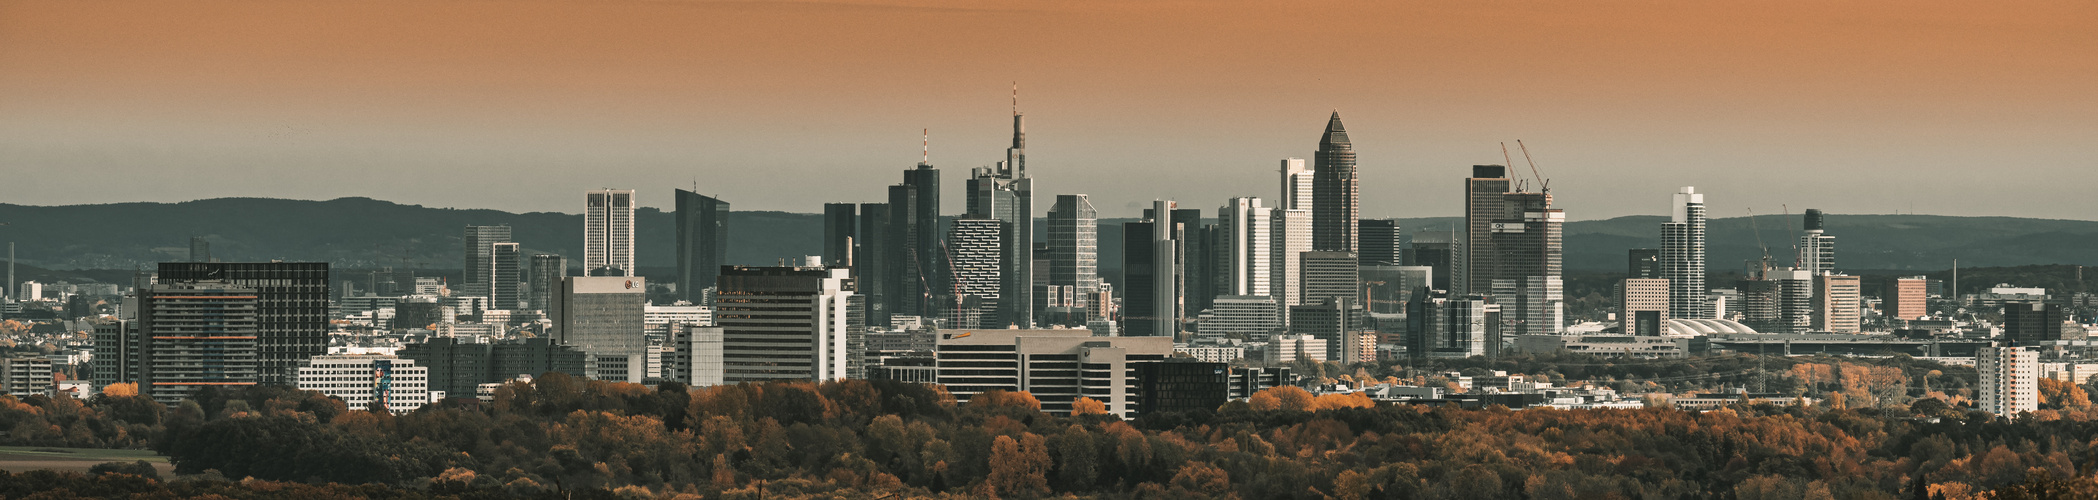 Herbstliches Frankfurt